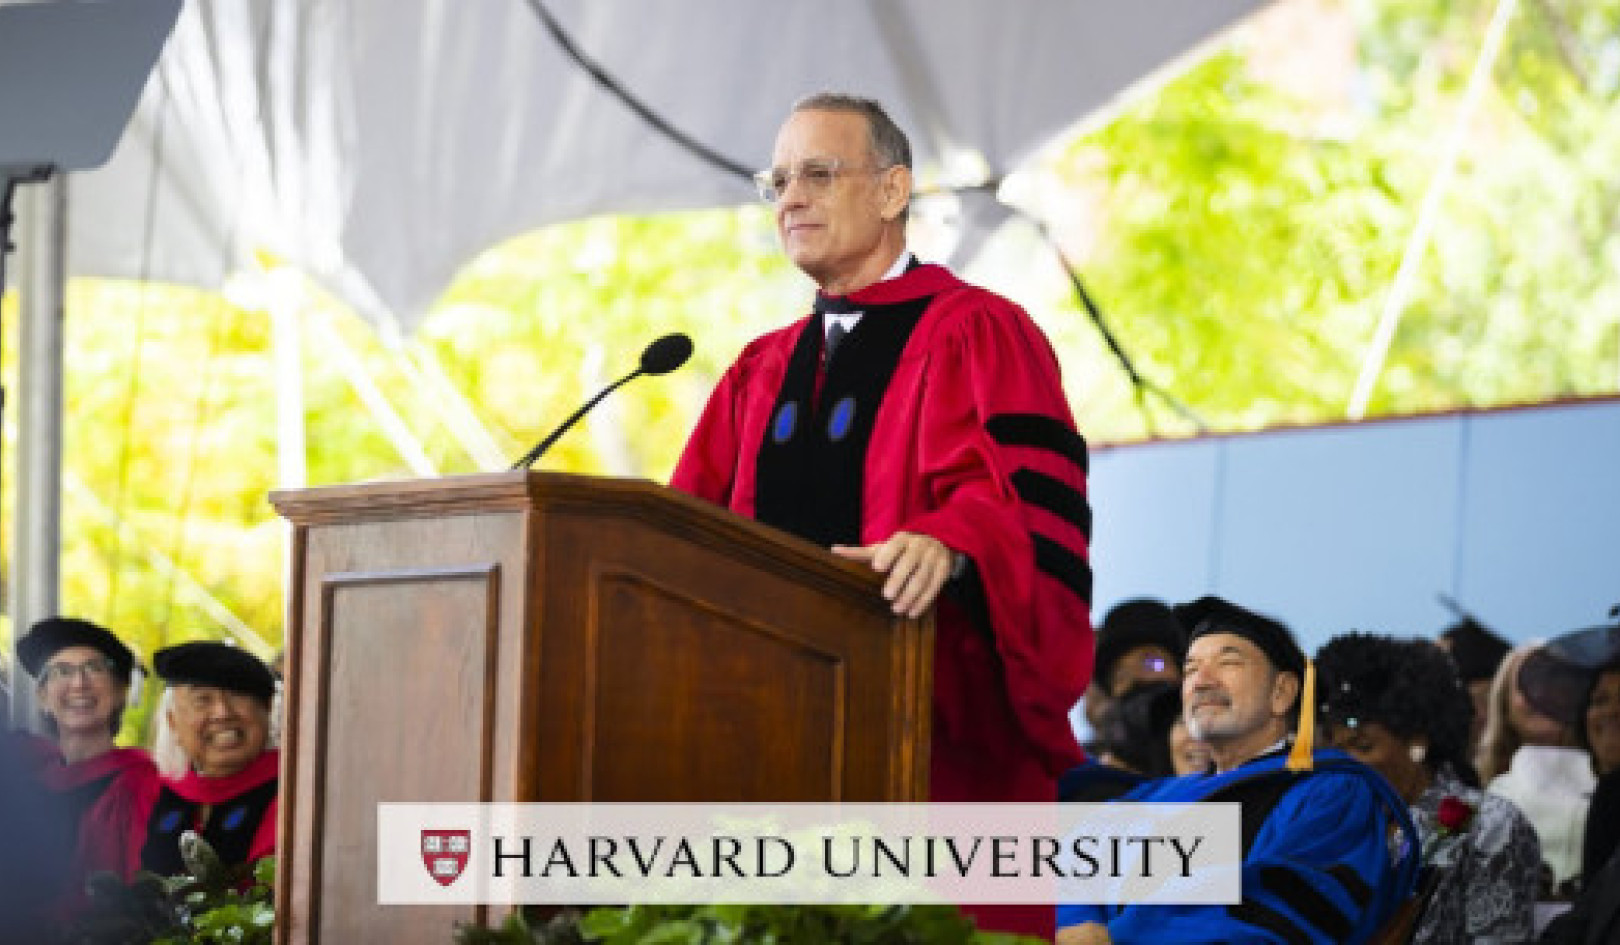 टॉम हैंक्स ने हार्वर्ड स्नातकों को सत्य, न्याय और अमेरिकी मार्ग अपनाने के लिए प्रेरित किया